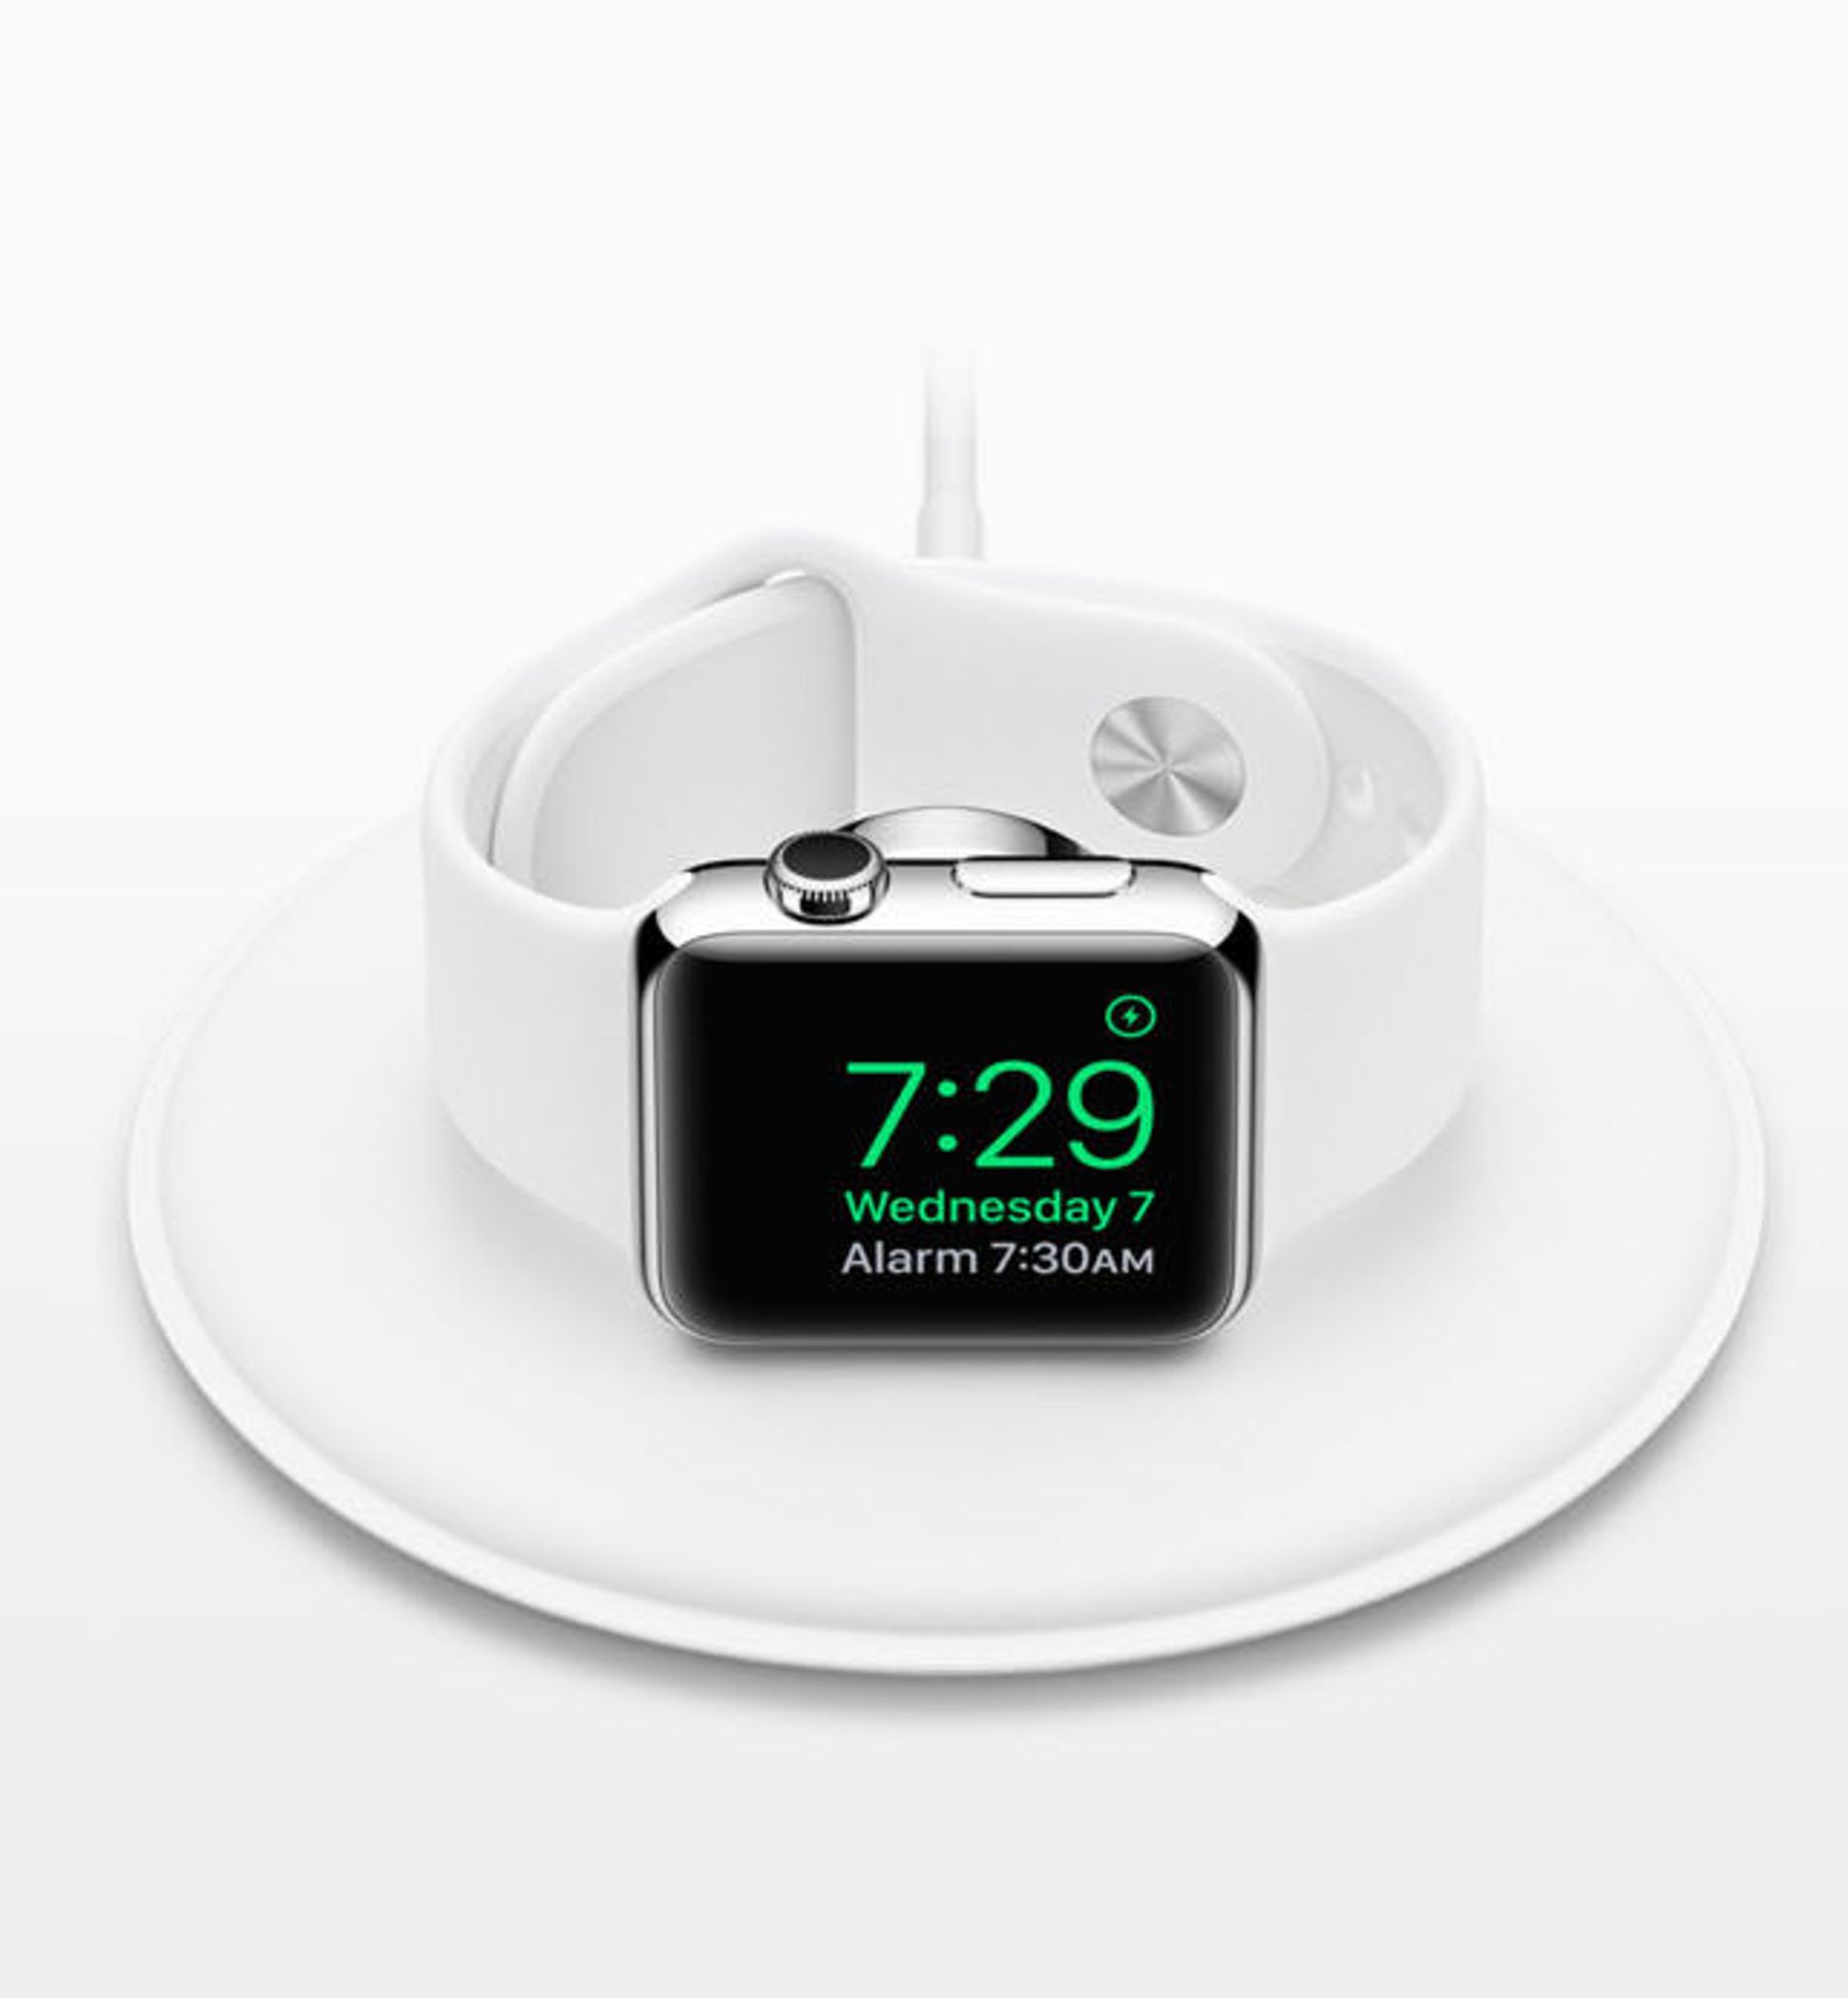 اپل واچ 2 / Apple Watch 2